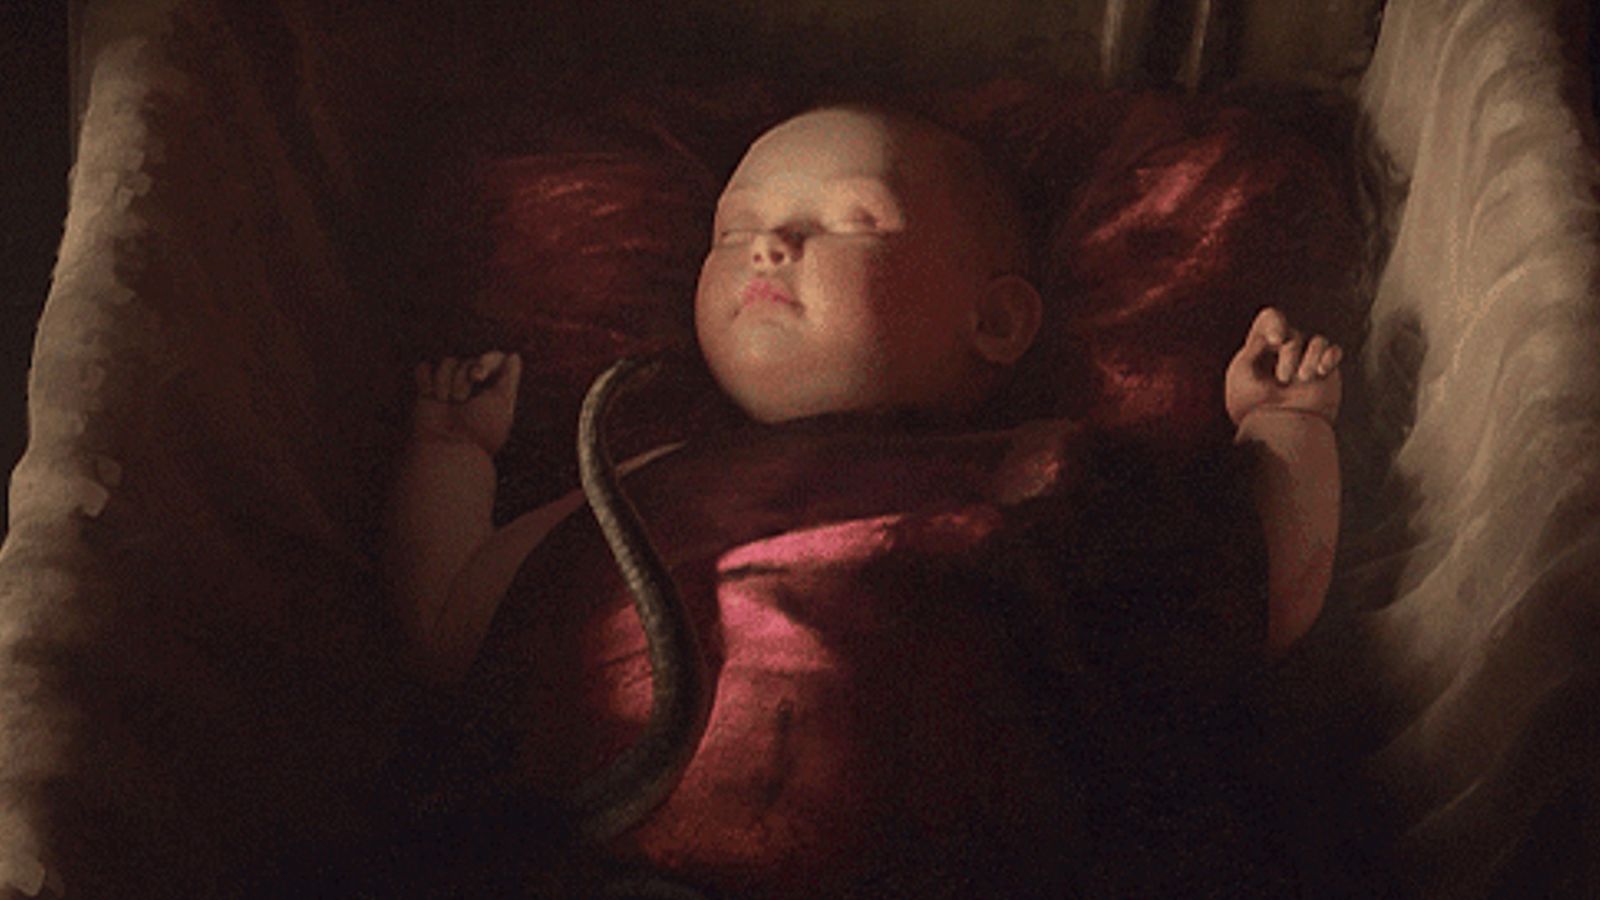 Crusader Kings 3: baby lies in red cradle as a snake slides across it.